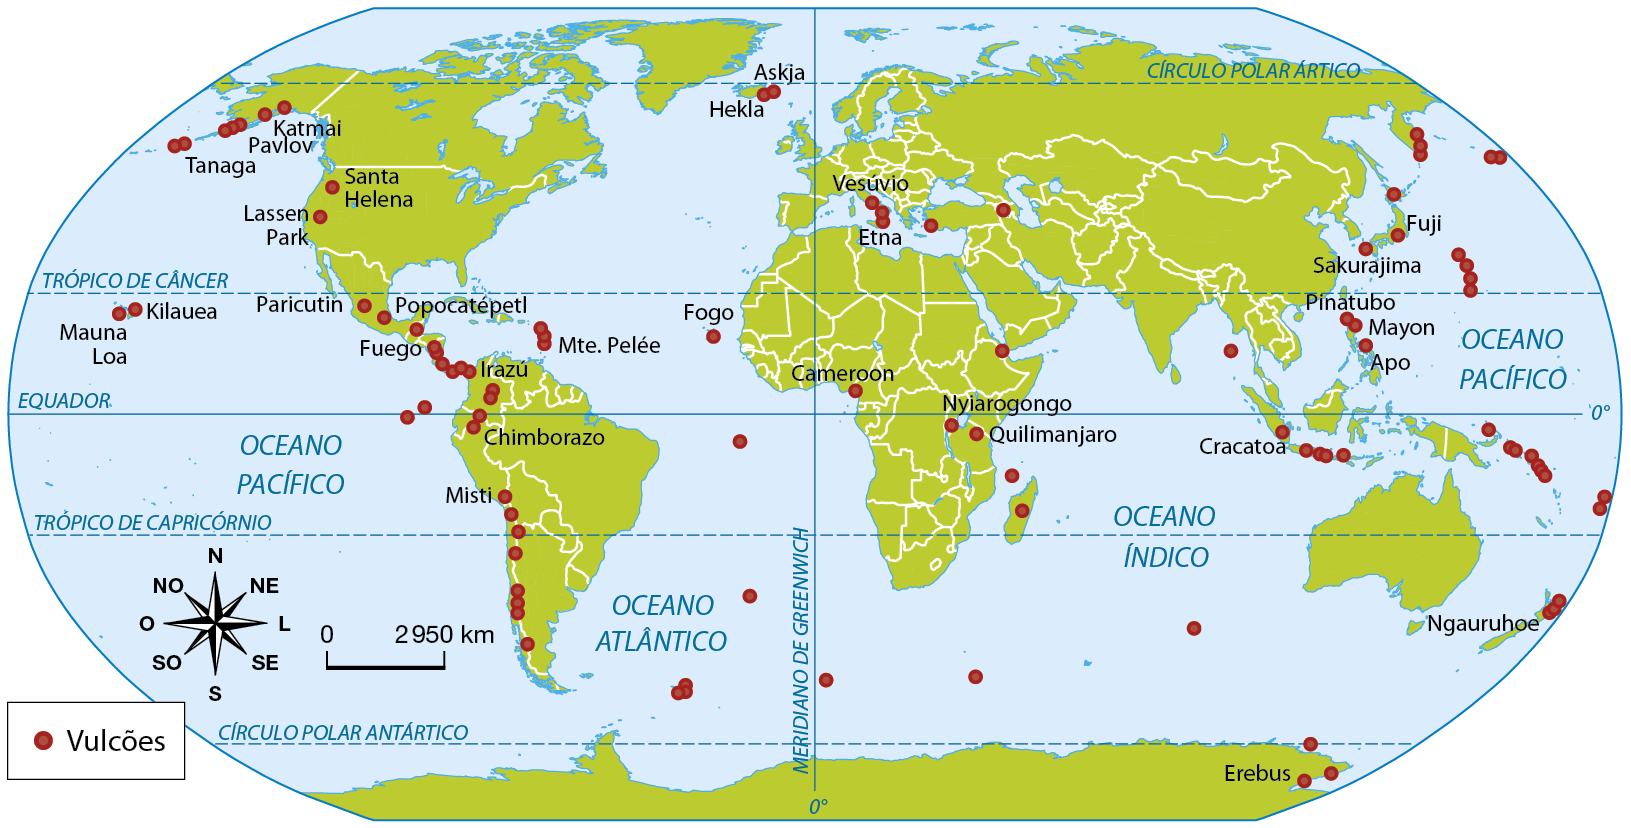 Mapa. Planisfério: principais vulcões (2018). Mapa contendo todos os continentes. Os principais vulcões estão representados pelo elemento gráfico de um ponto vermelho. Eles estão concentrados em países banhados pelo Oceano Pacífico. Divididos por continentes, estão listados alguns vulcões: América: Tanaga, Pavlov, Katmai, Santa Helena, Lassen Park, Paricutin, Popocatépetl, Monte Pelée, Fuego, Irazú, Misti, Chimborazo, Kilauea, Mauna Loa. África: Fogo, Cameroon, Nyiarogongo, Quilimanjaro. Europa: Askja, Hekla, Vesúvio, Etna. Ásia: Fuji, Sakurajima, Pinatubo, Mayon, Apo, Cracatoa. Oceania: Ngauruhoe. Antártica: Erebus Abaixo, rosa dos ventos e escala o a 2.950 quilômetros.